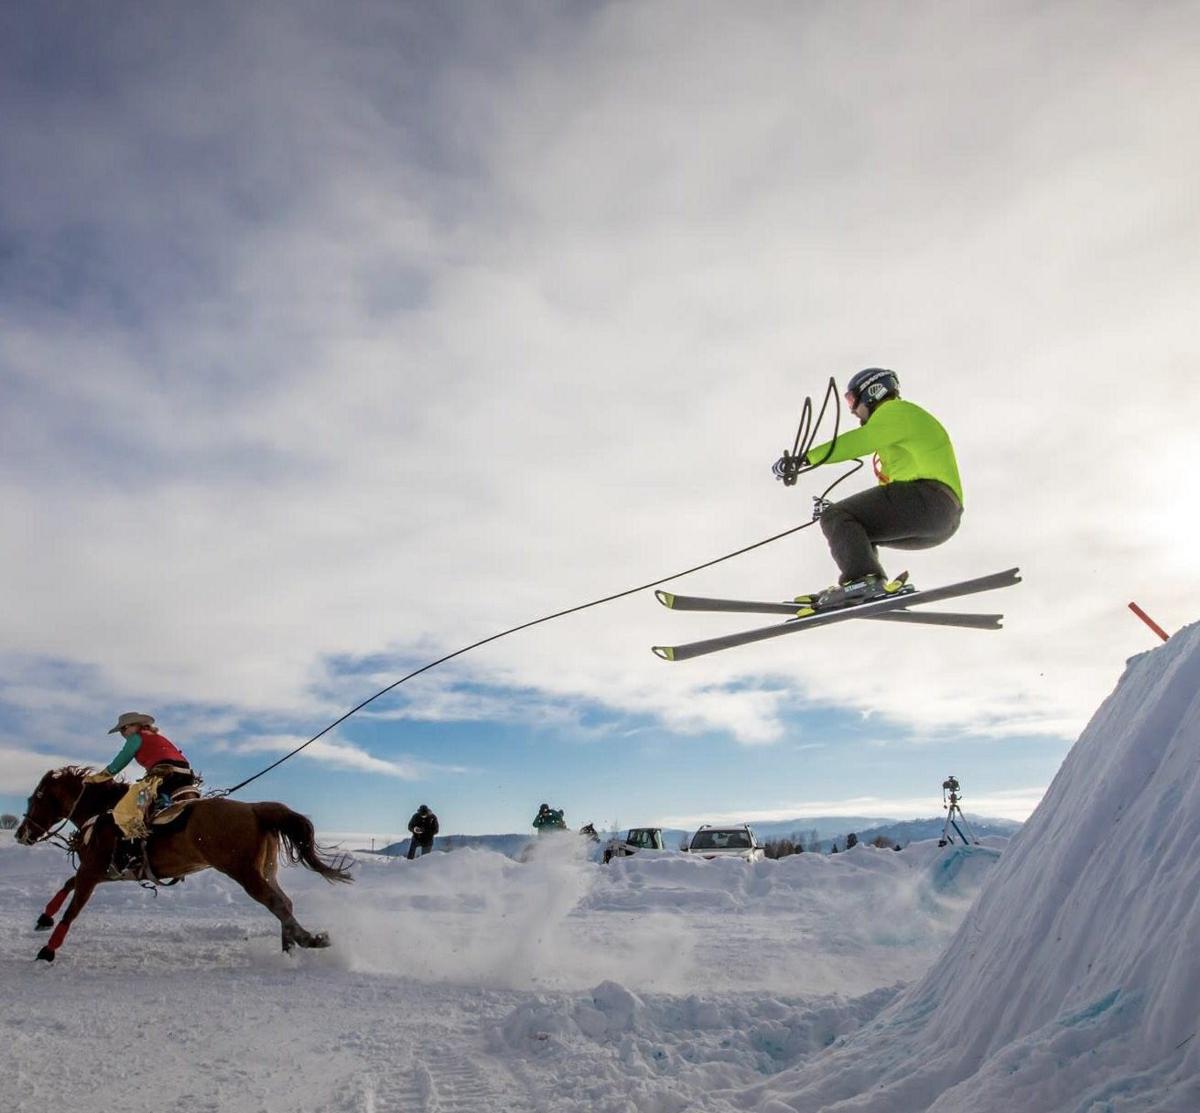 Snöflinga winter festival brings skijoring to Butte